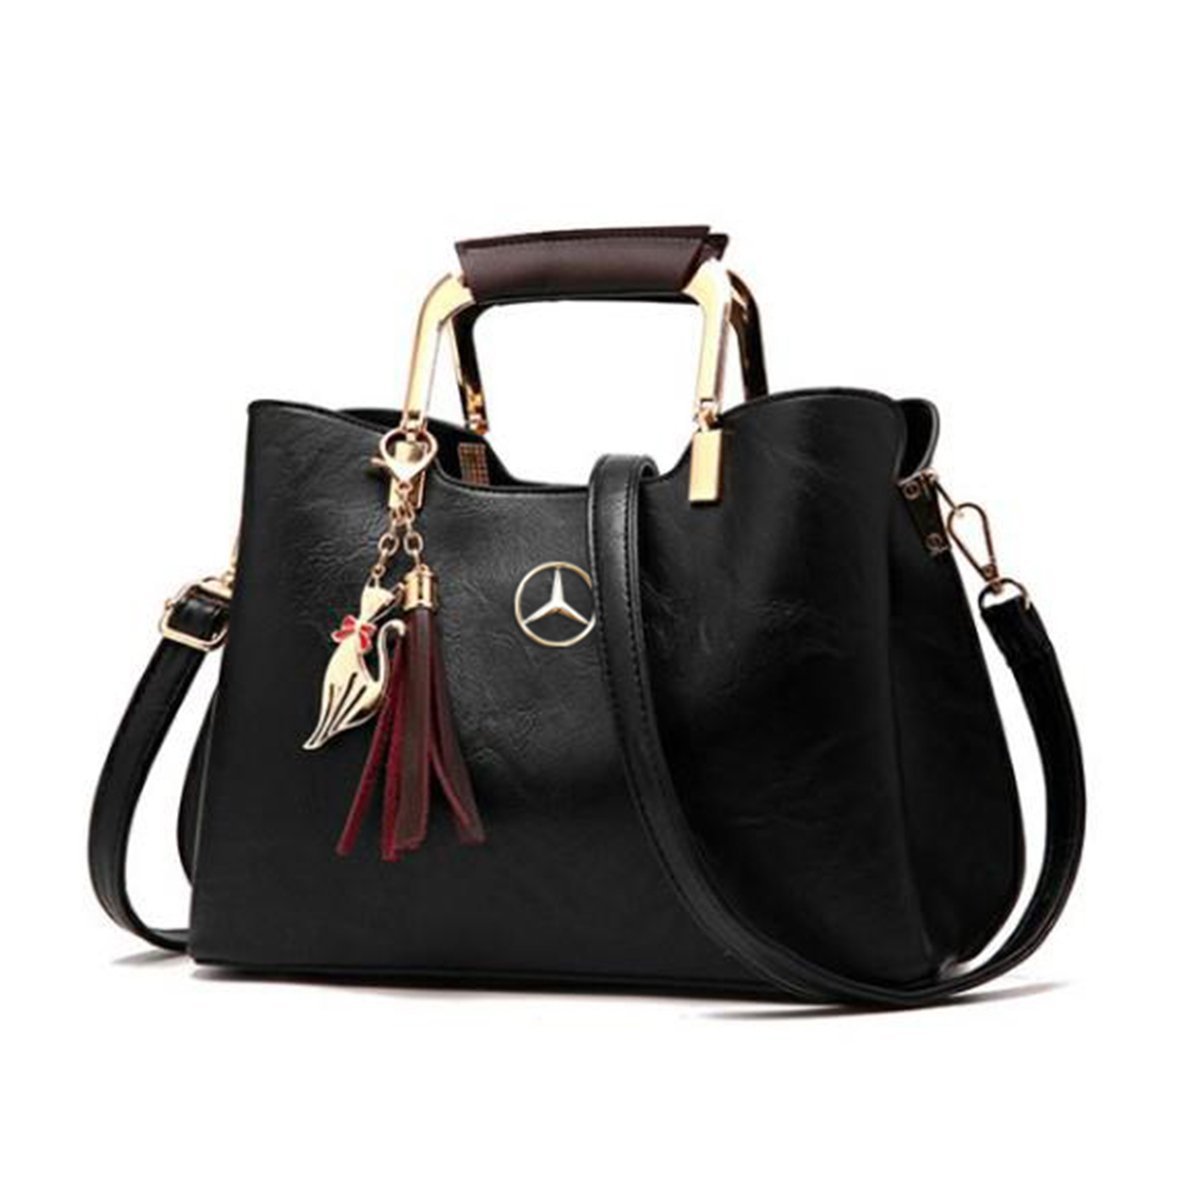 Mercedes-Benz Ladies Shopper Bag Blue Artificial Leather B66953714